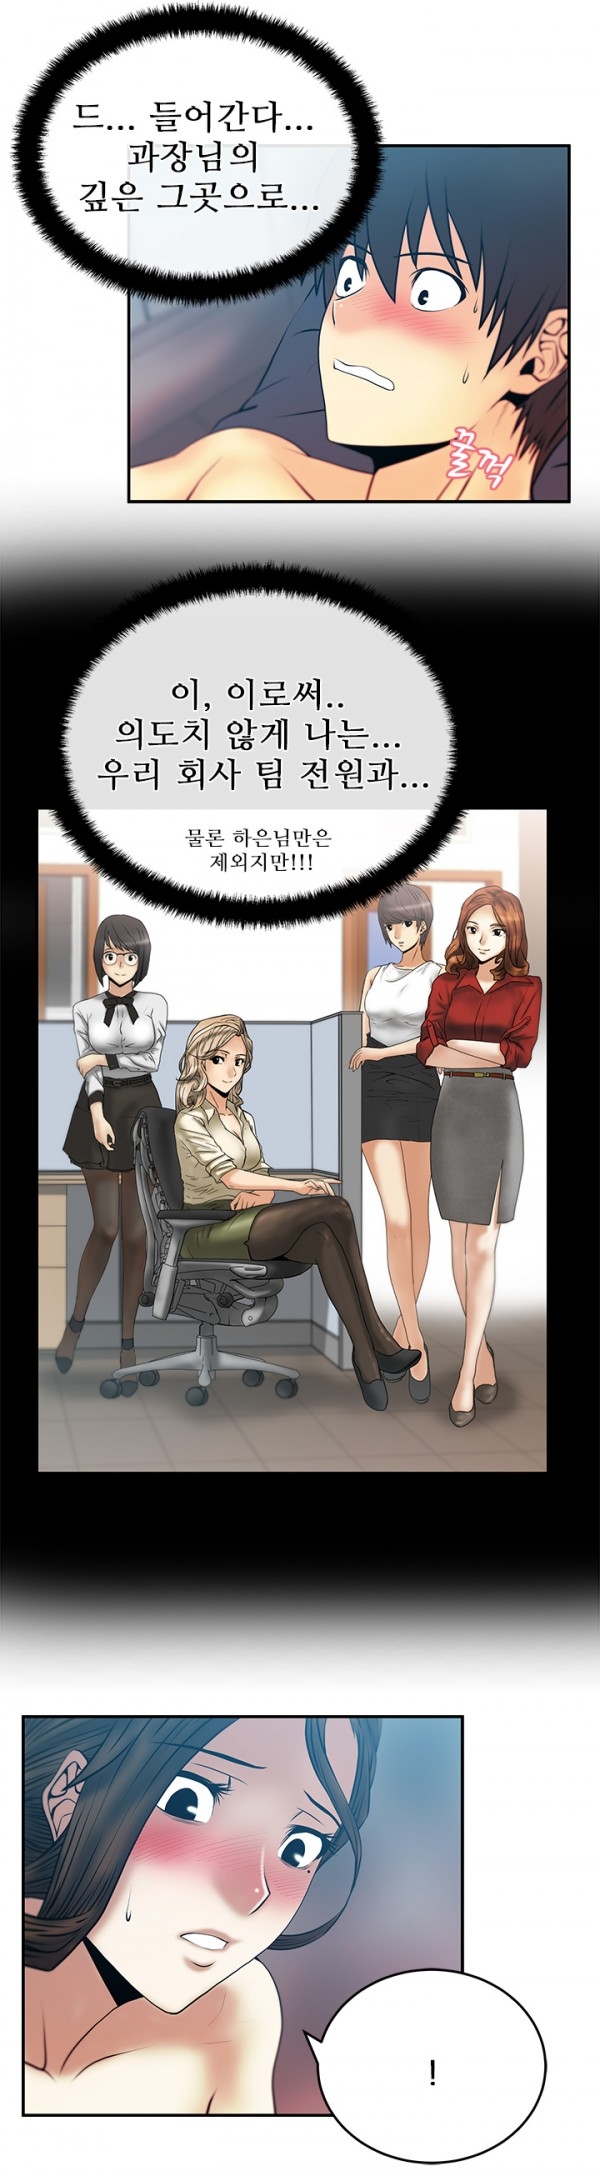 [Minu Mindu] Office Lady Vol. 1 [Korean] 305